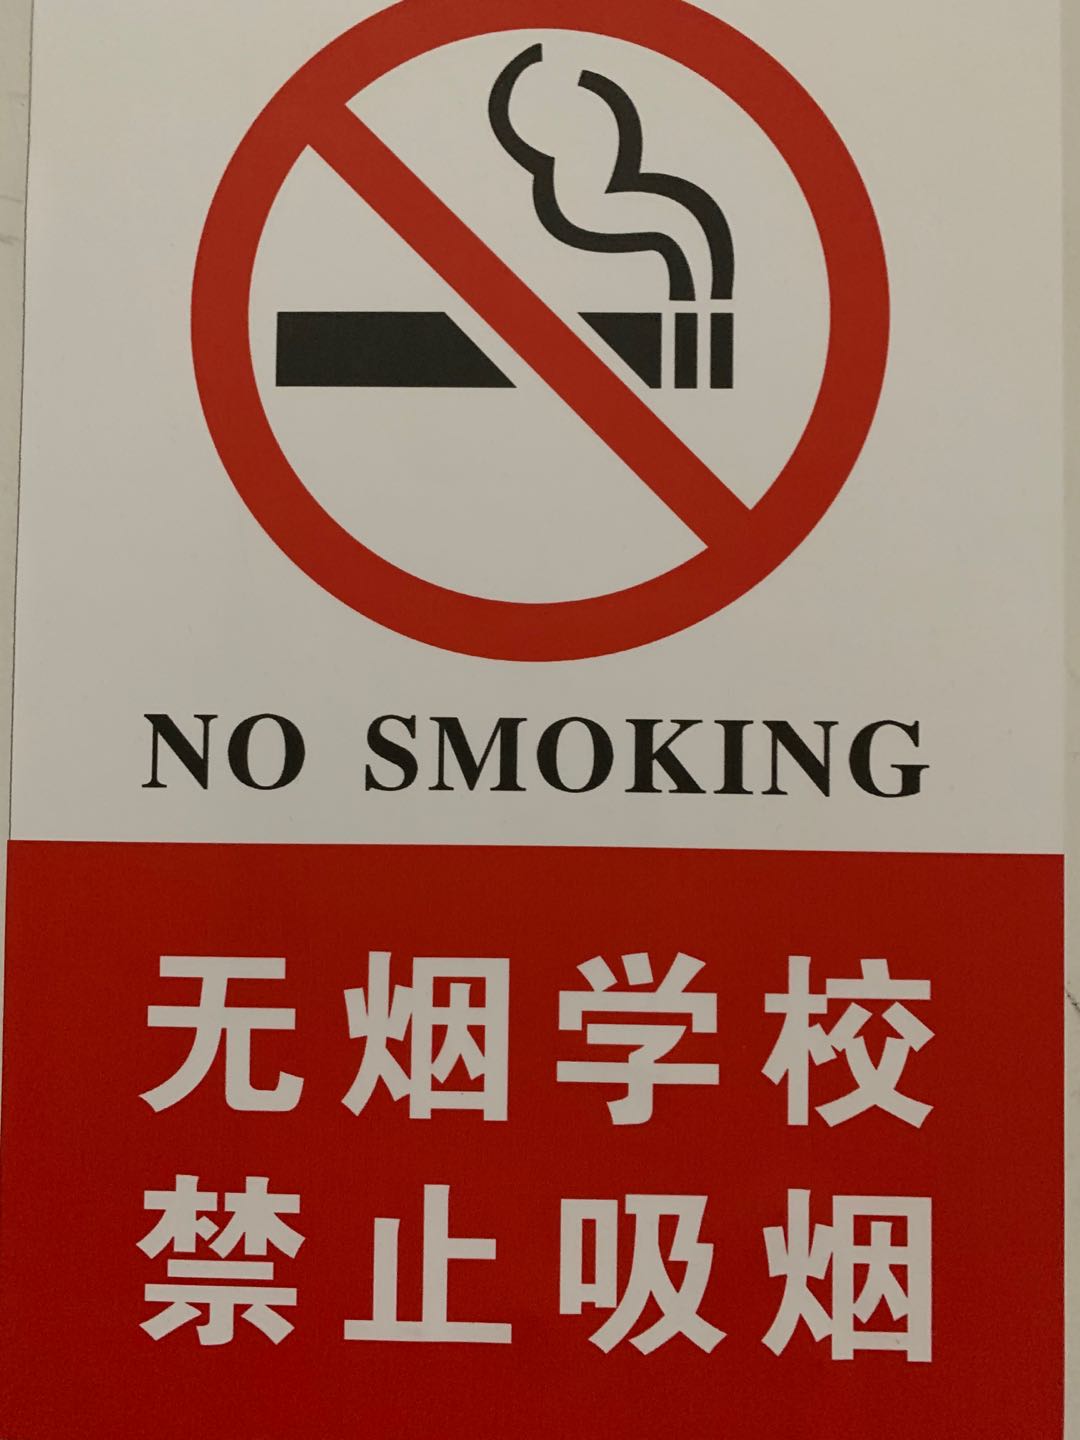 5 楼层张贴的禁烟警示